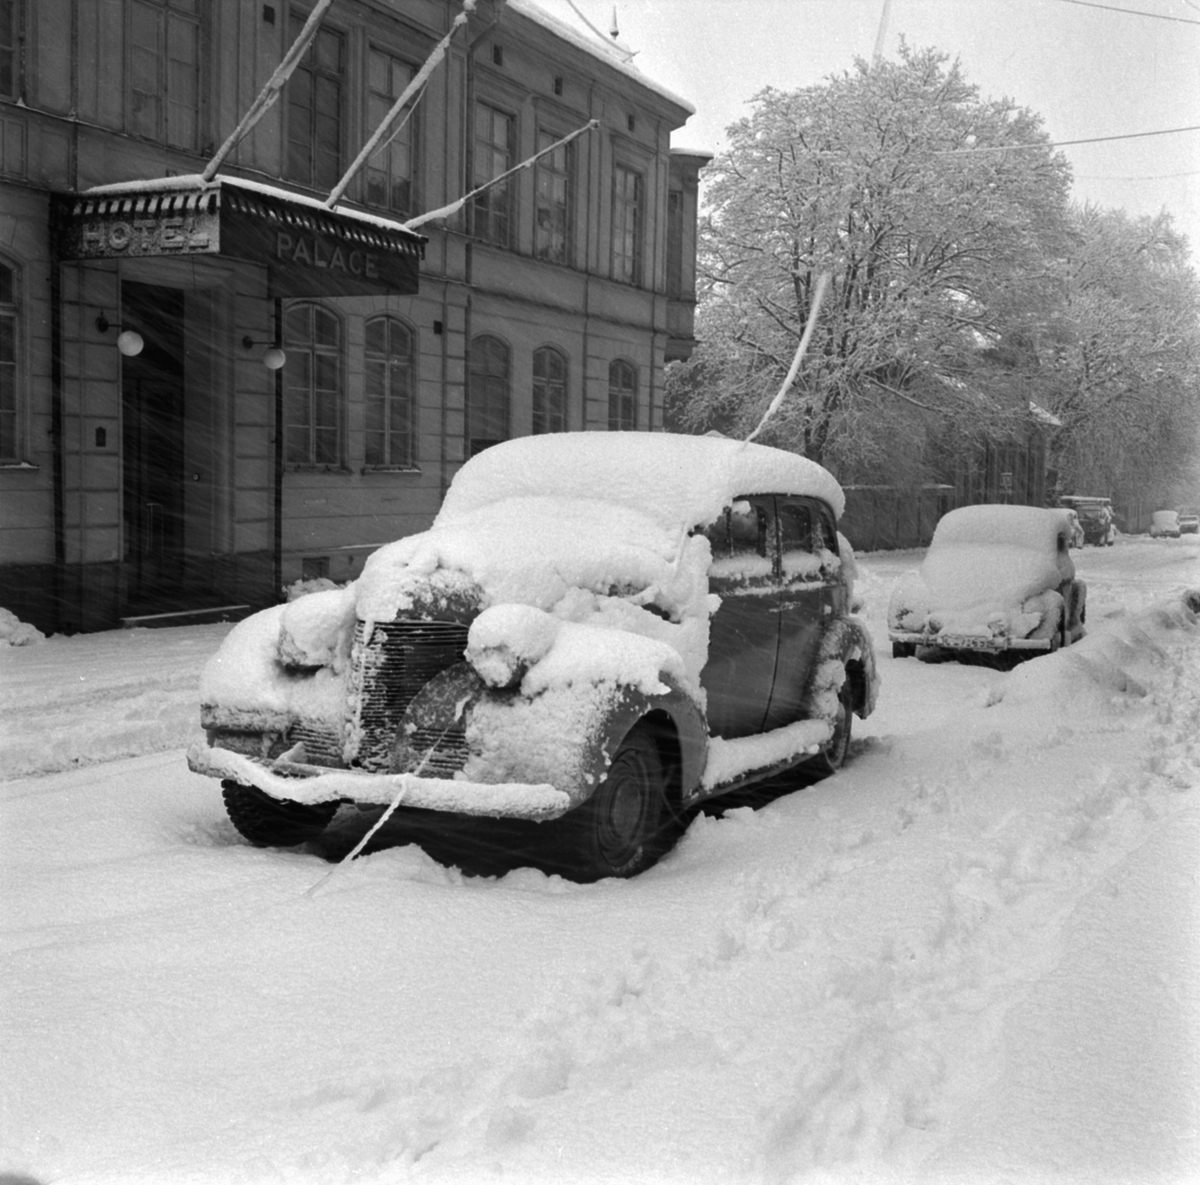 Ymnigt snöfall i Linköping. Just detta särskilt kraftiga snöoväder drabbade staden under februari månads sista dagar 1954. Här oplogat framför Hotell Palace vid Kungsgatan.